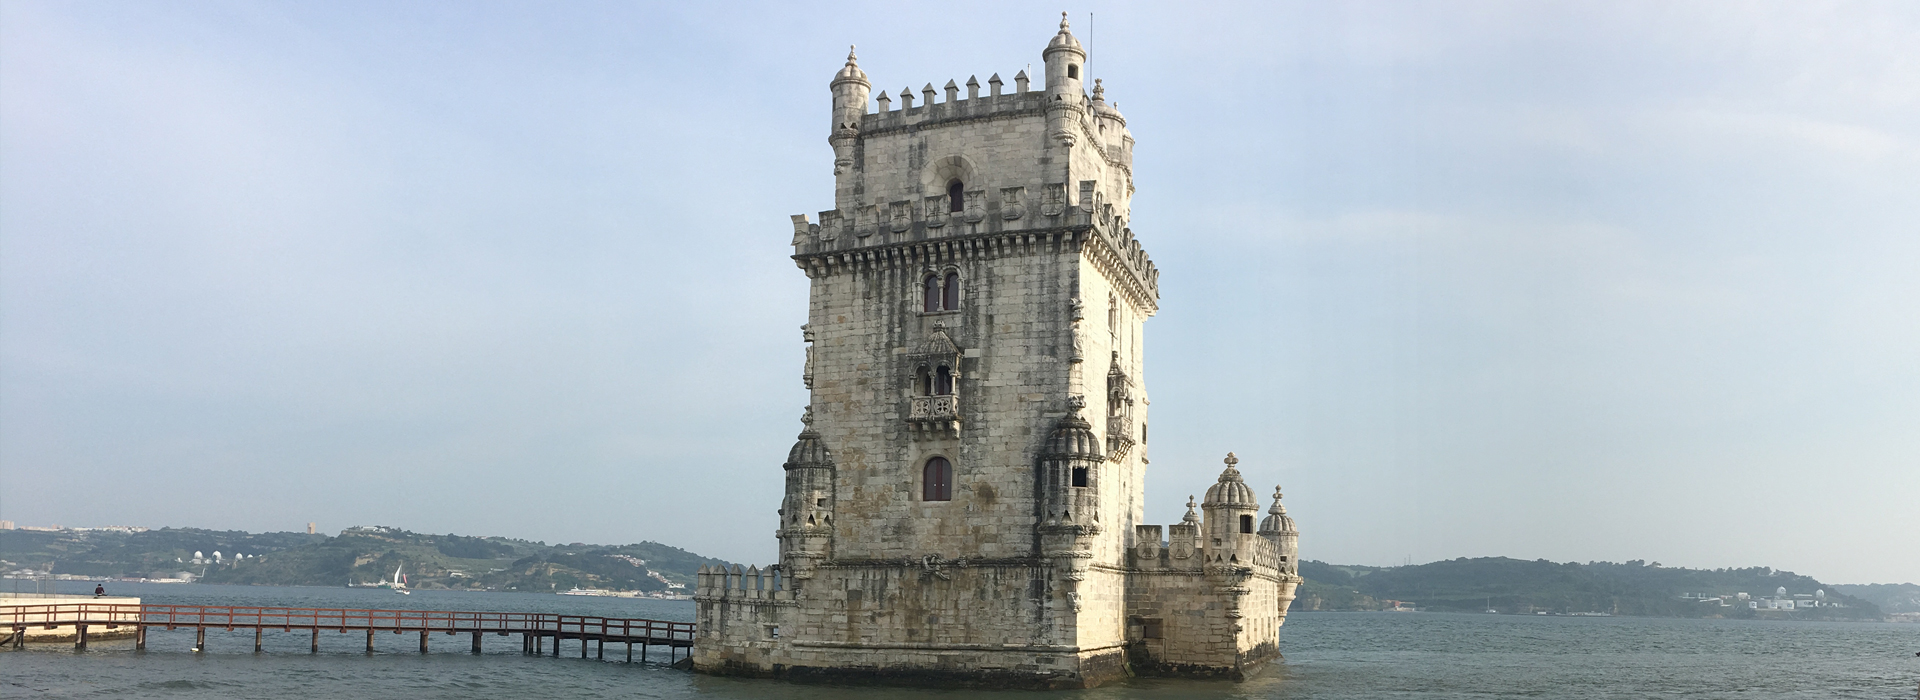 Torre de Belém (Belém Tower)